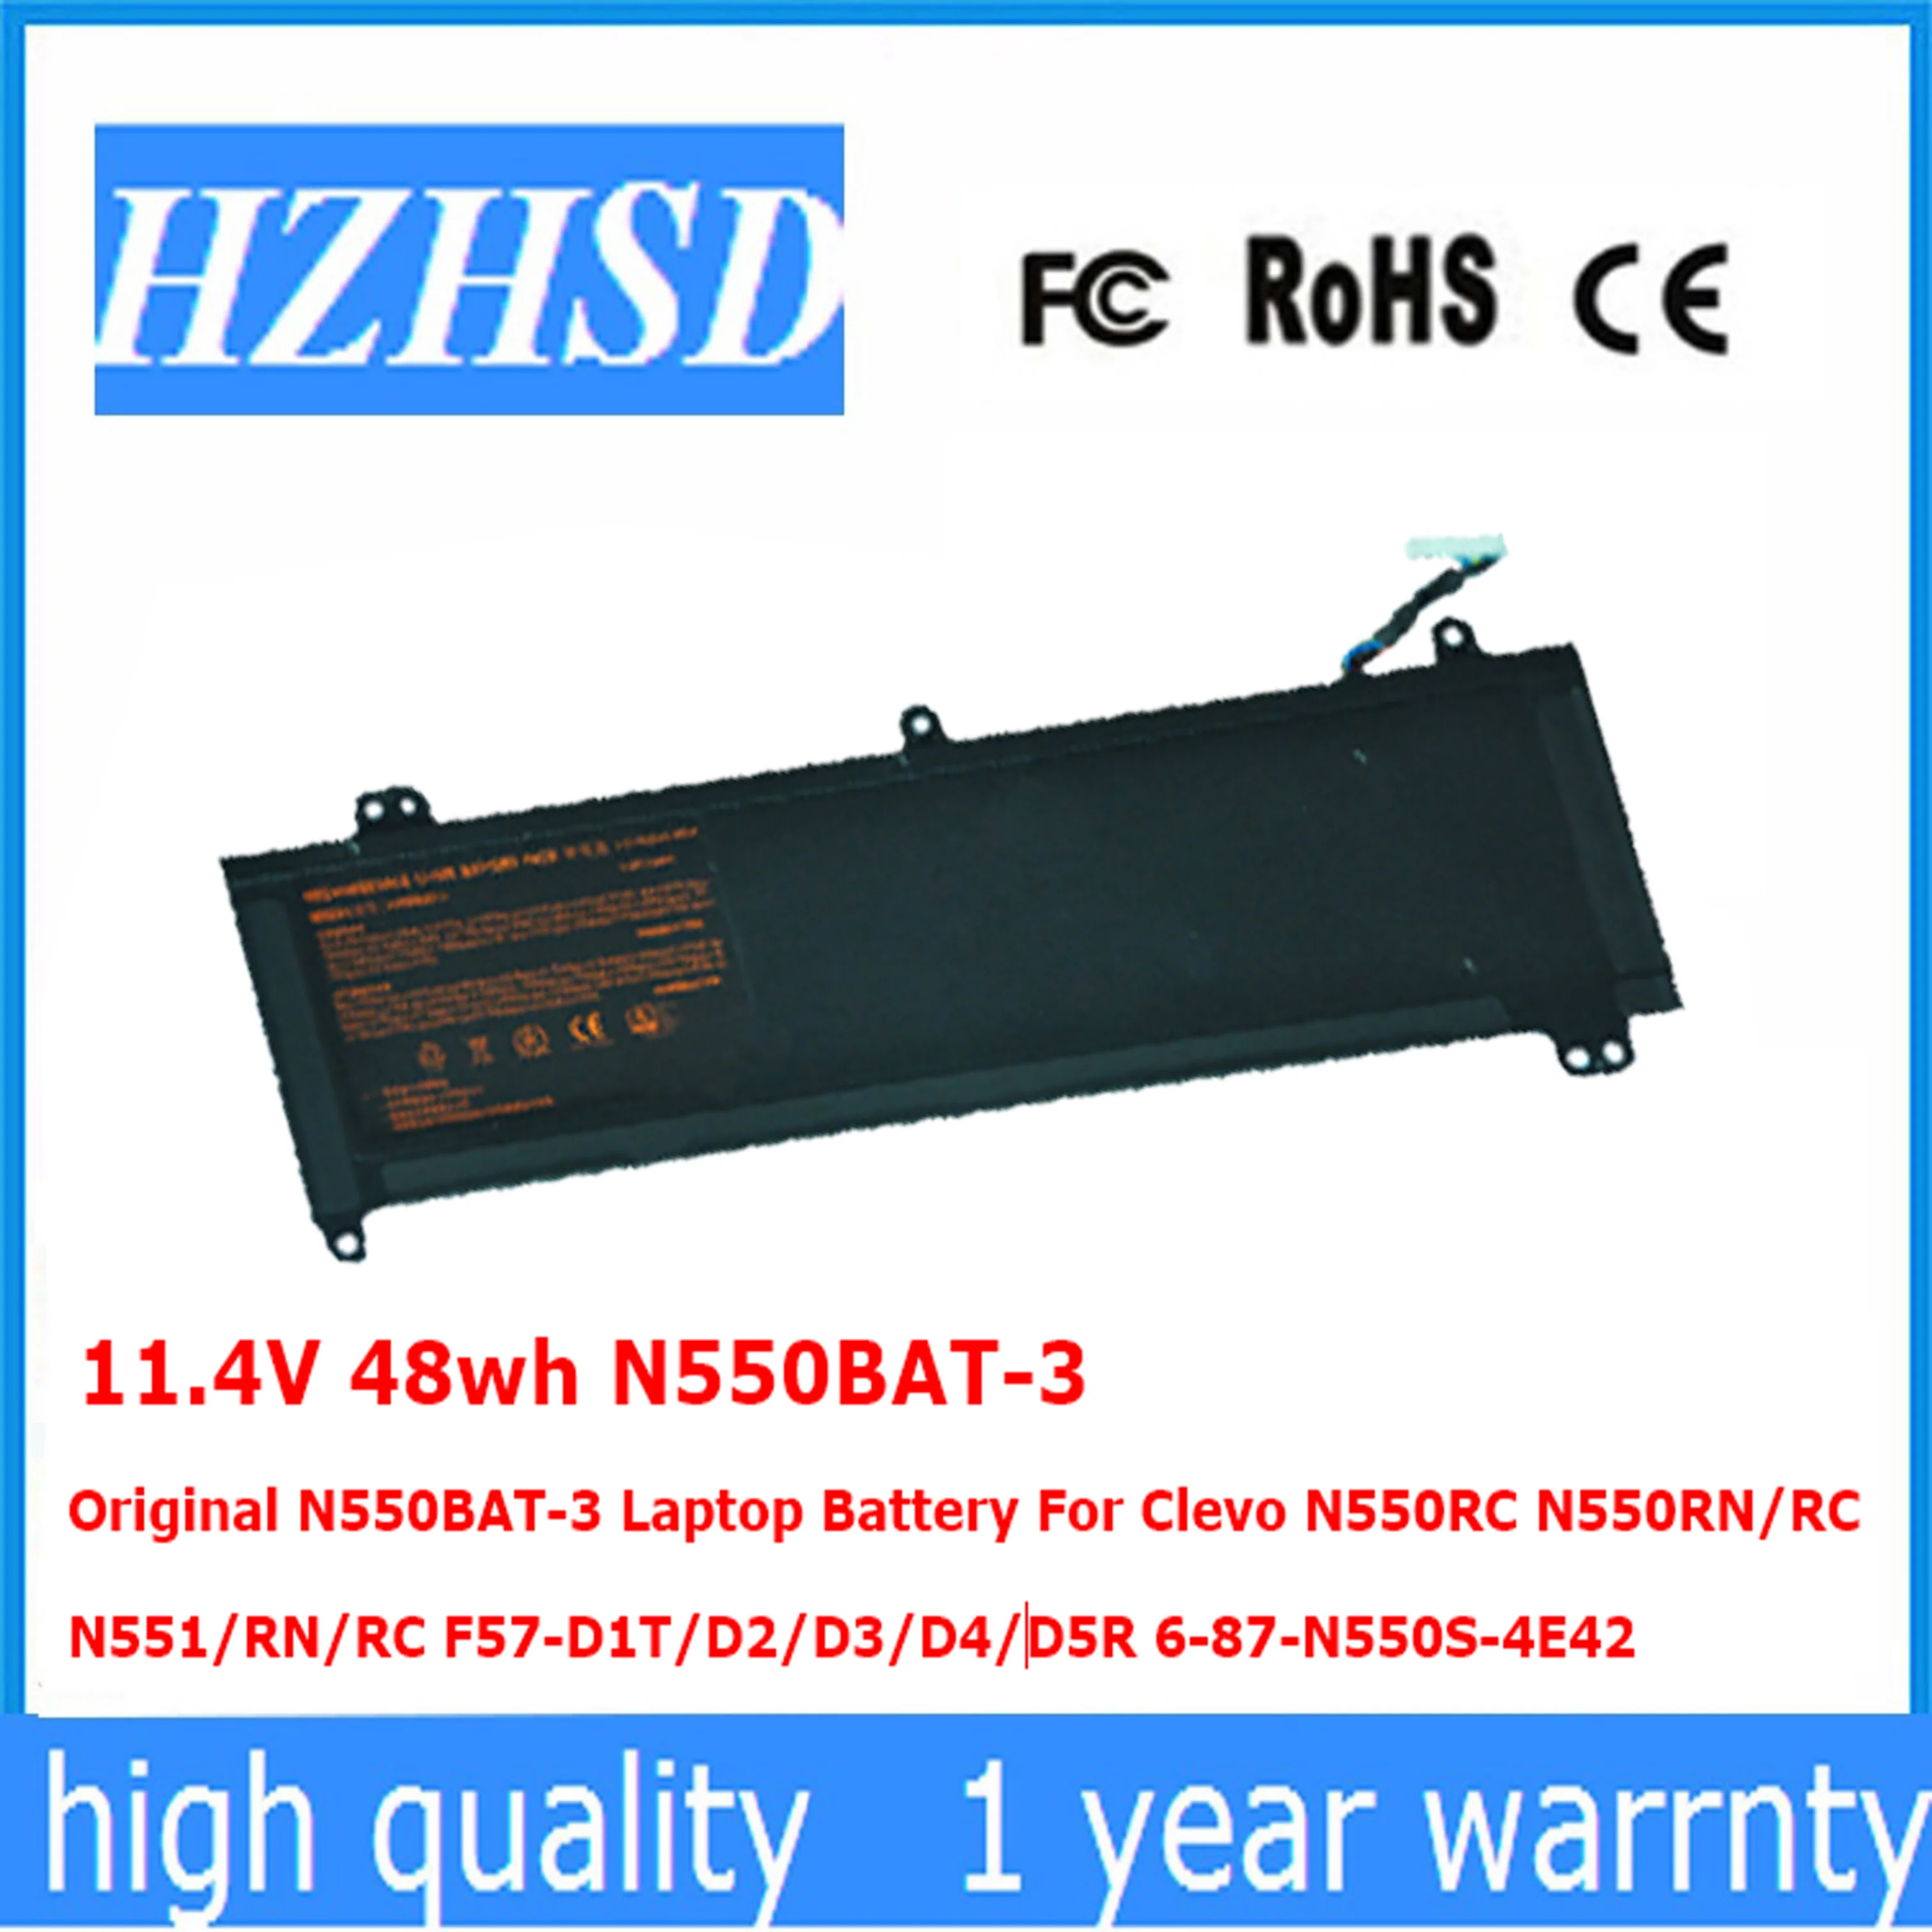 

11.4V 48wh N550BAT-3 Original N550BAT-3 Laptop Battery For Clevo N550RC N550RN/RC N551/RN/RC F57-D1/D2/D3/D4/D5R 6-87-N550S-4E42